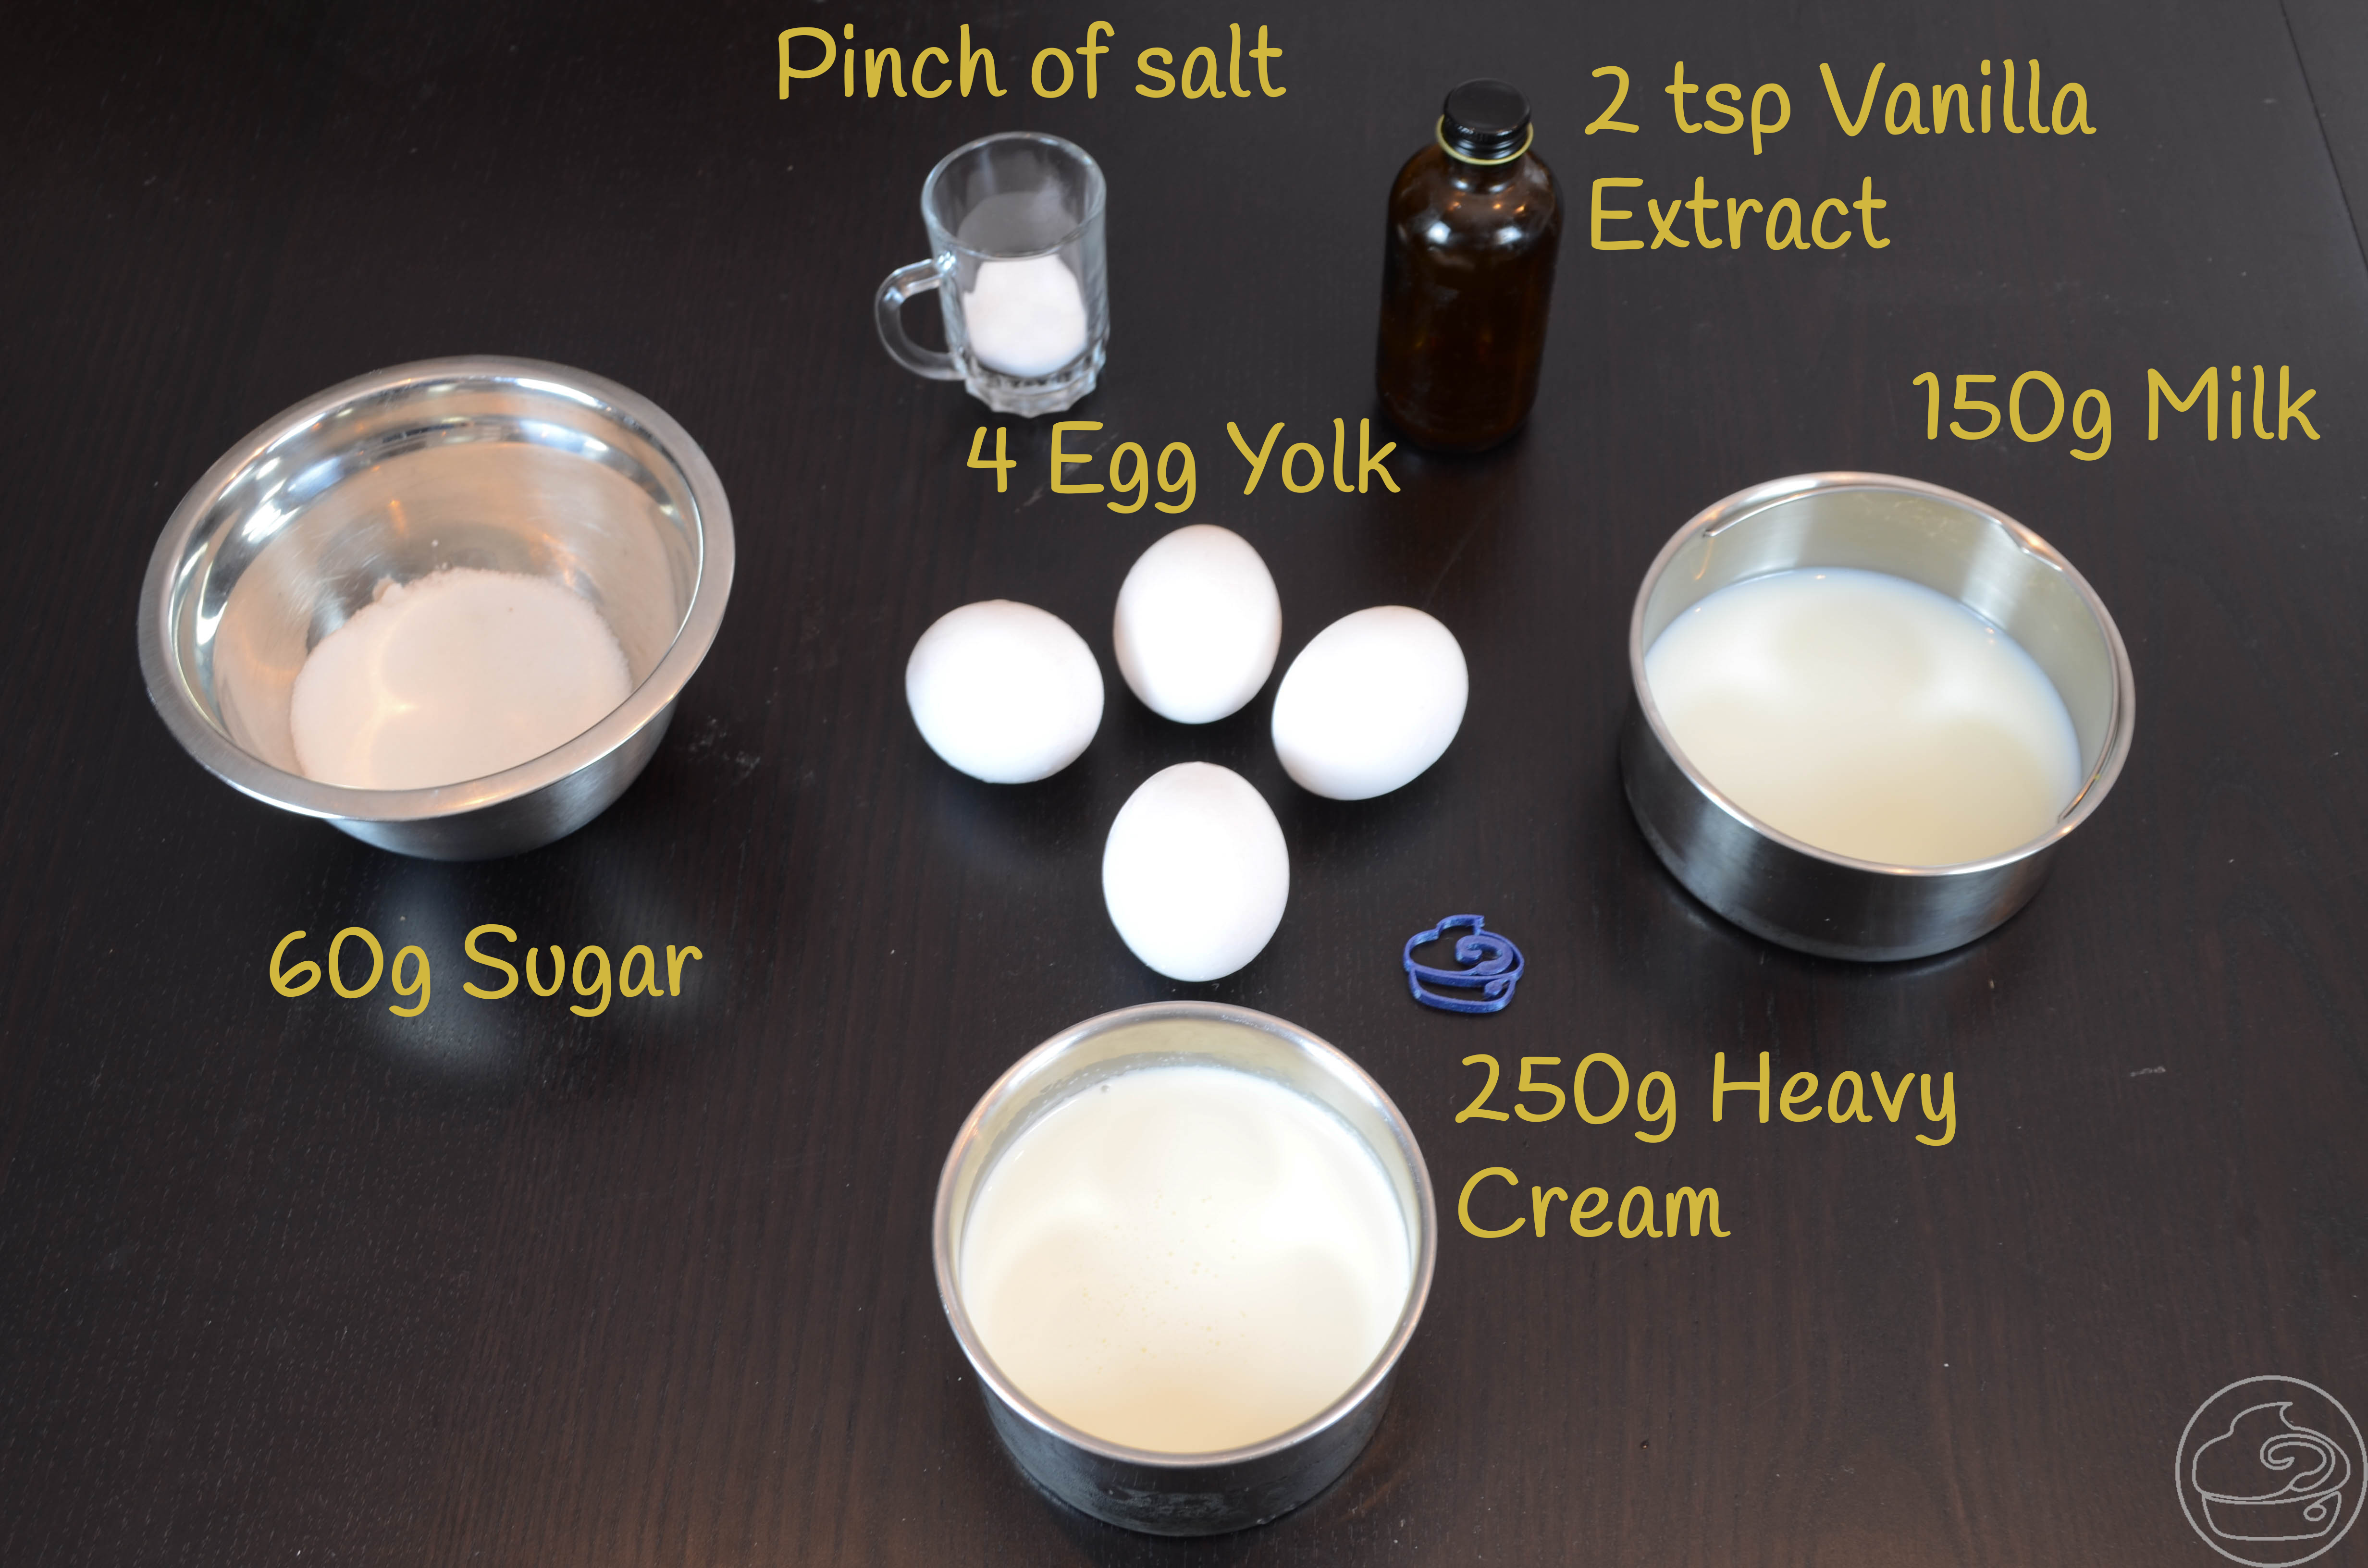 Creme Brulee Ingredients List